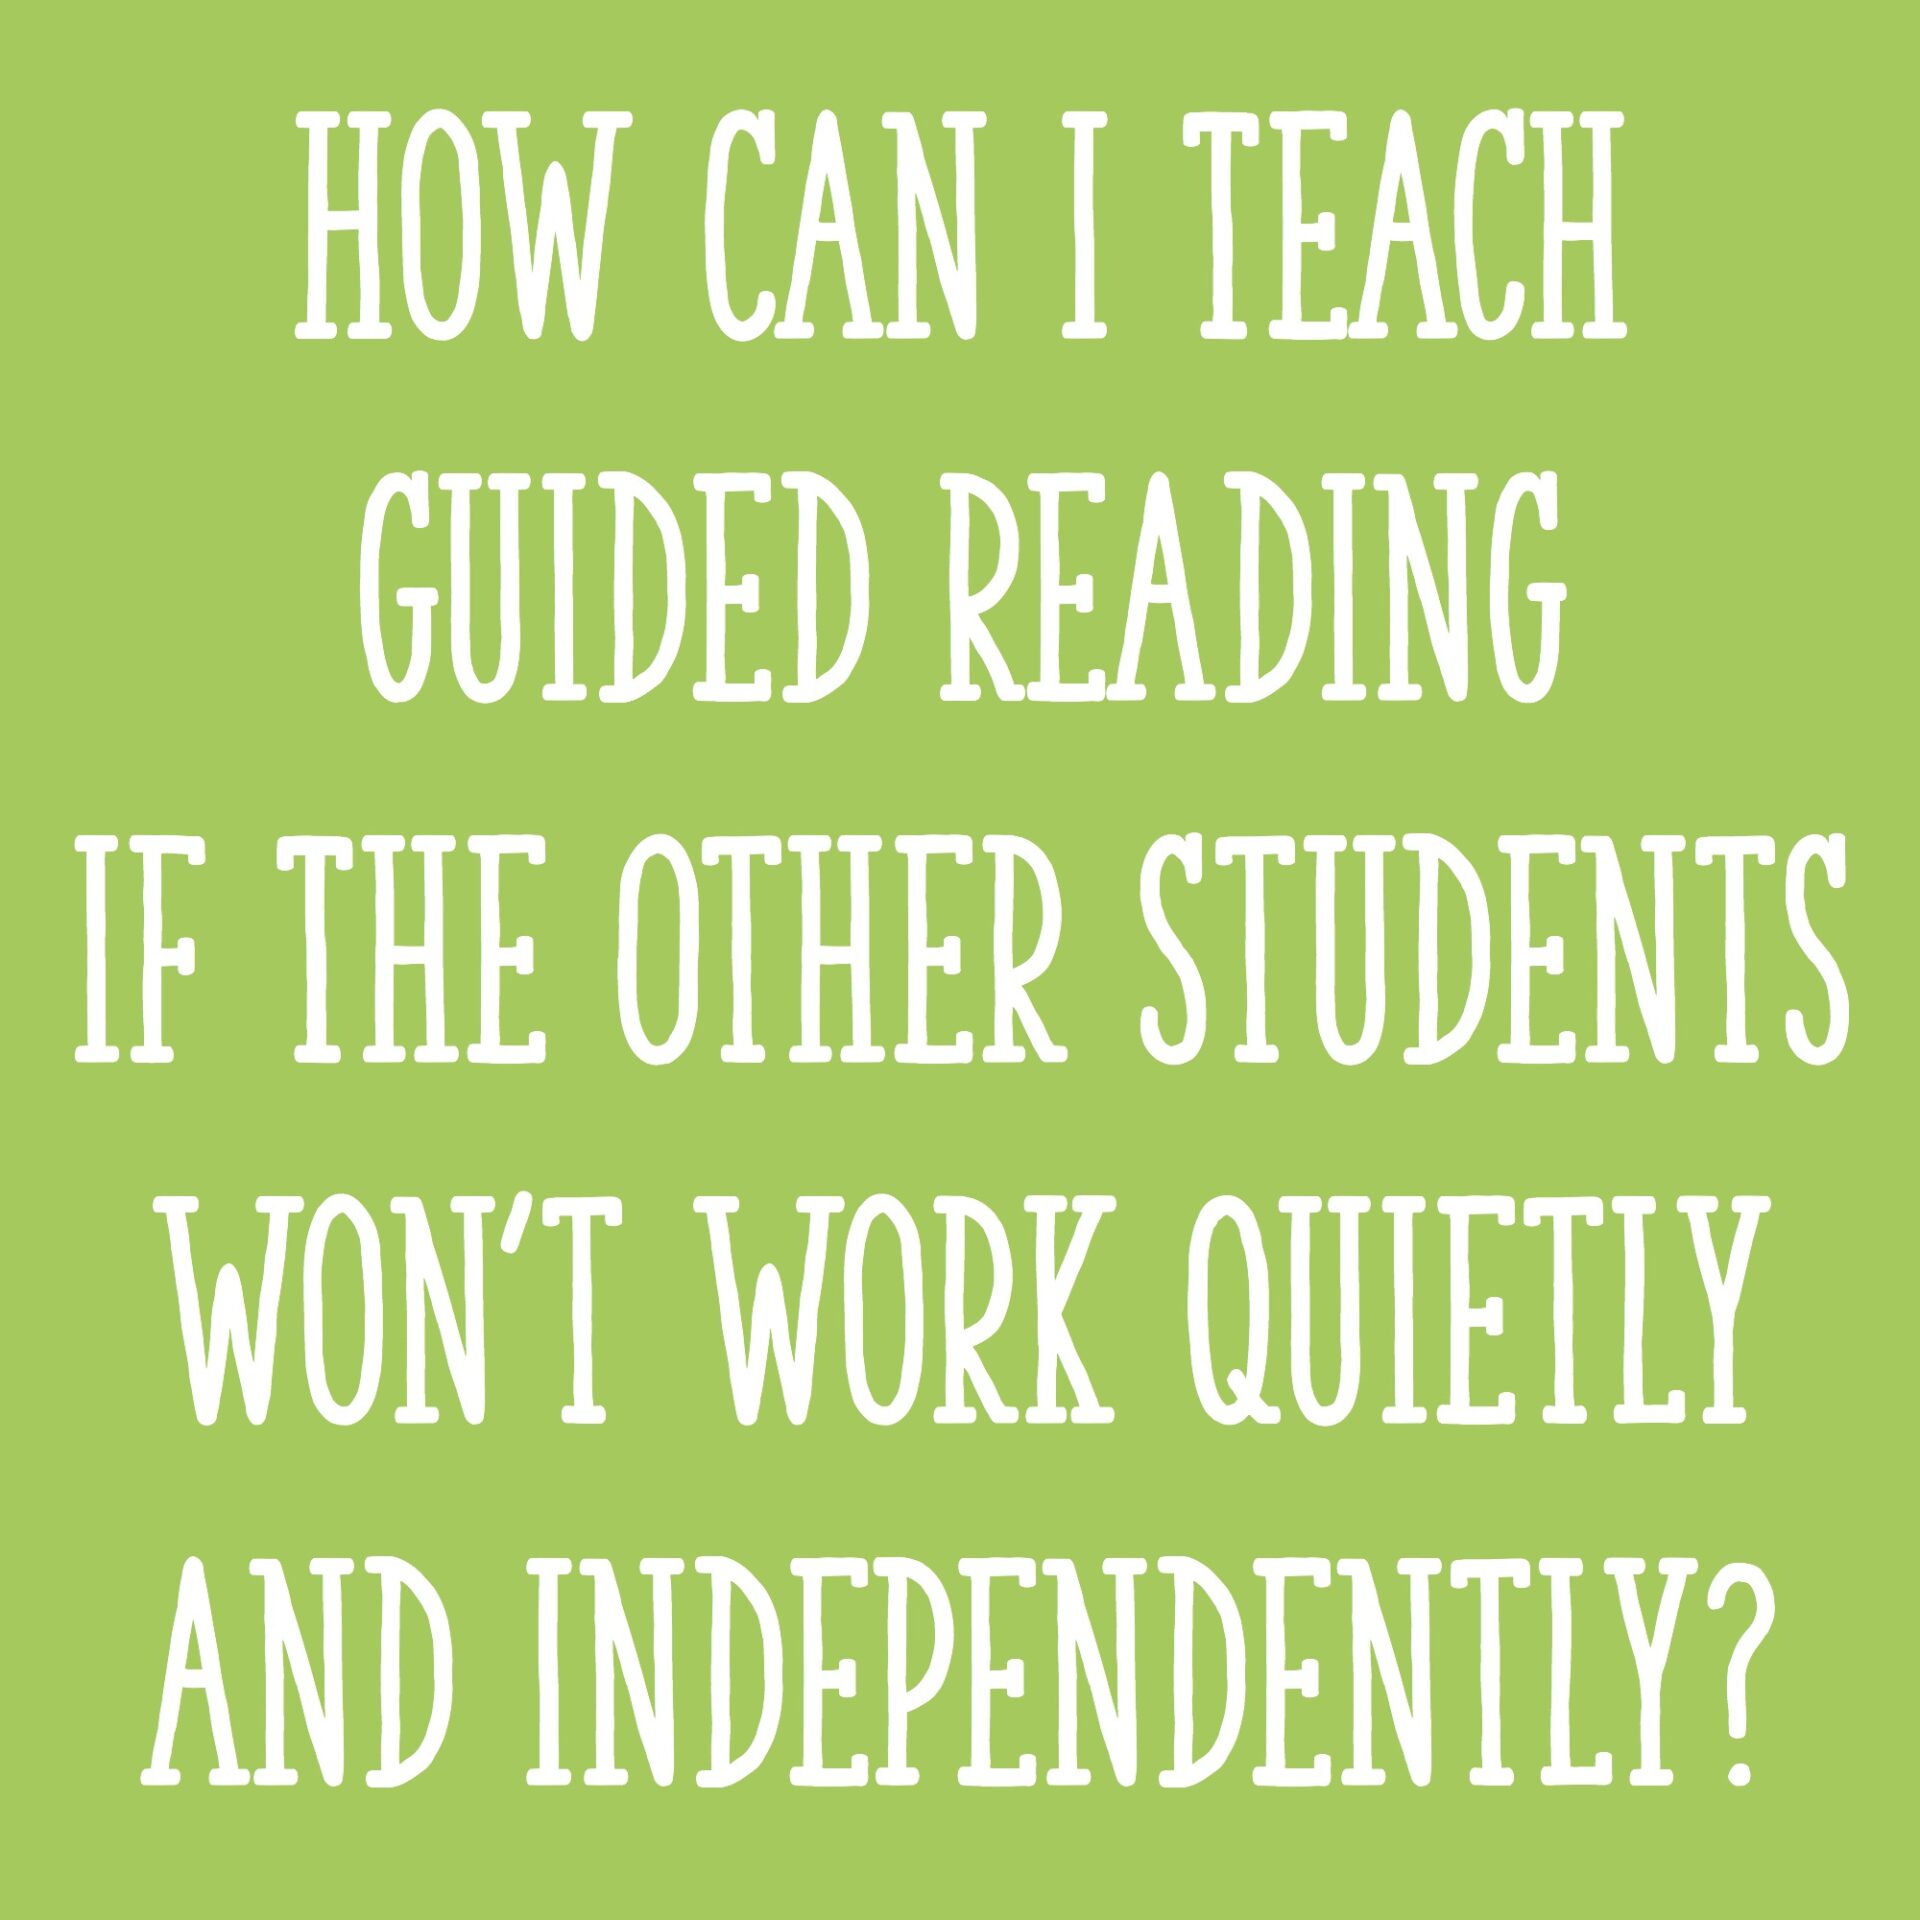 How do you teach reading?